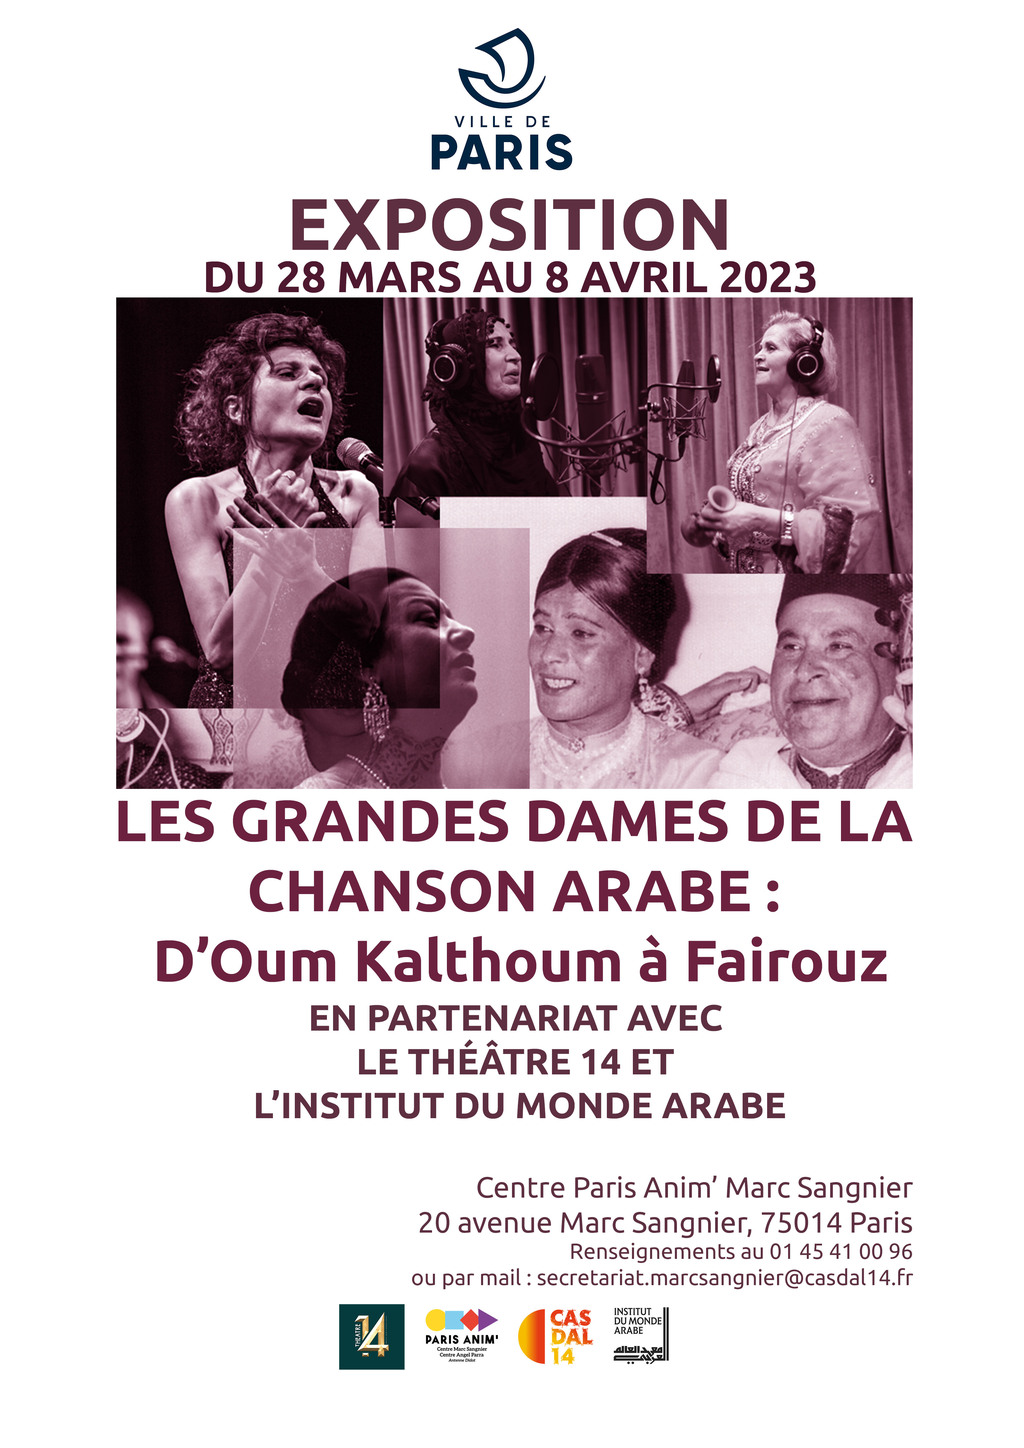 Exposition : "Les grandes dames de la chanson arabe : D'Oum Kalthoum à Fairouz"